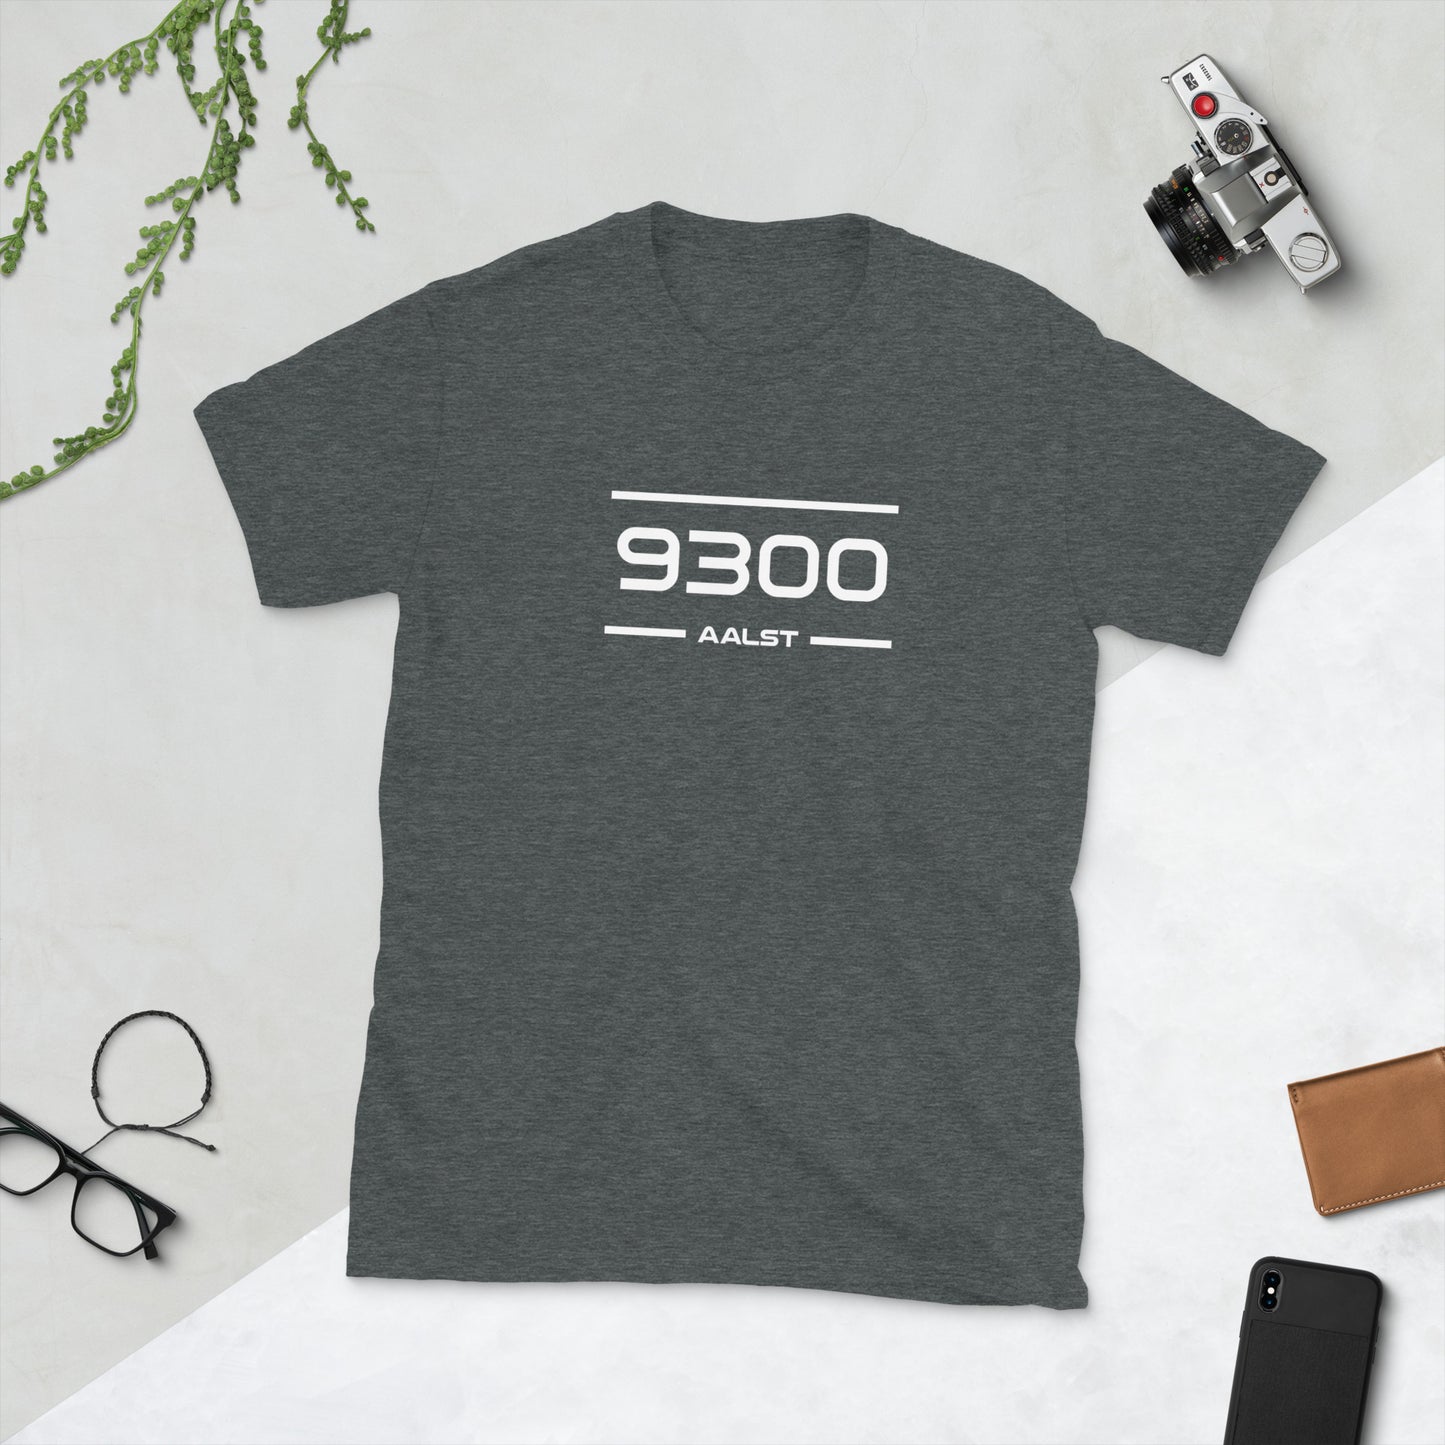 T-Shirt - 9300 - Aalst